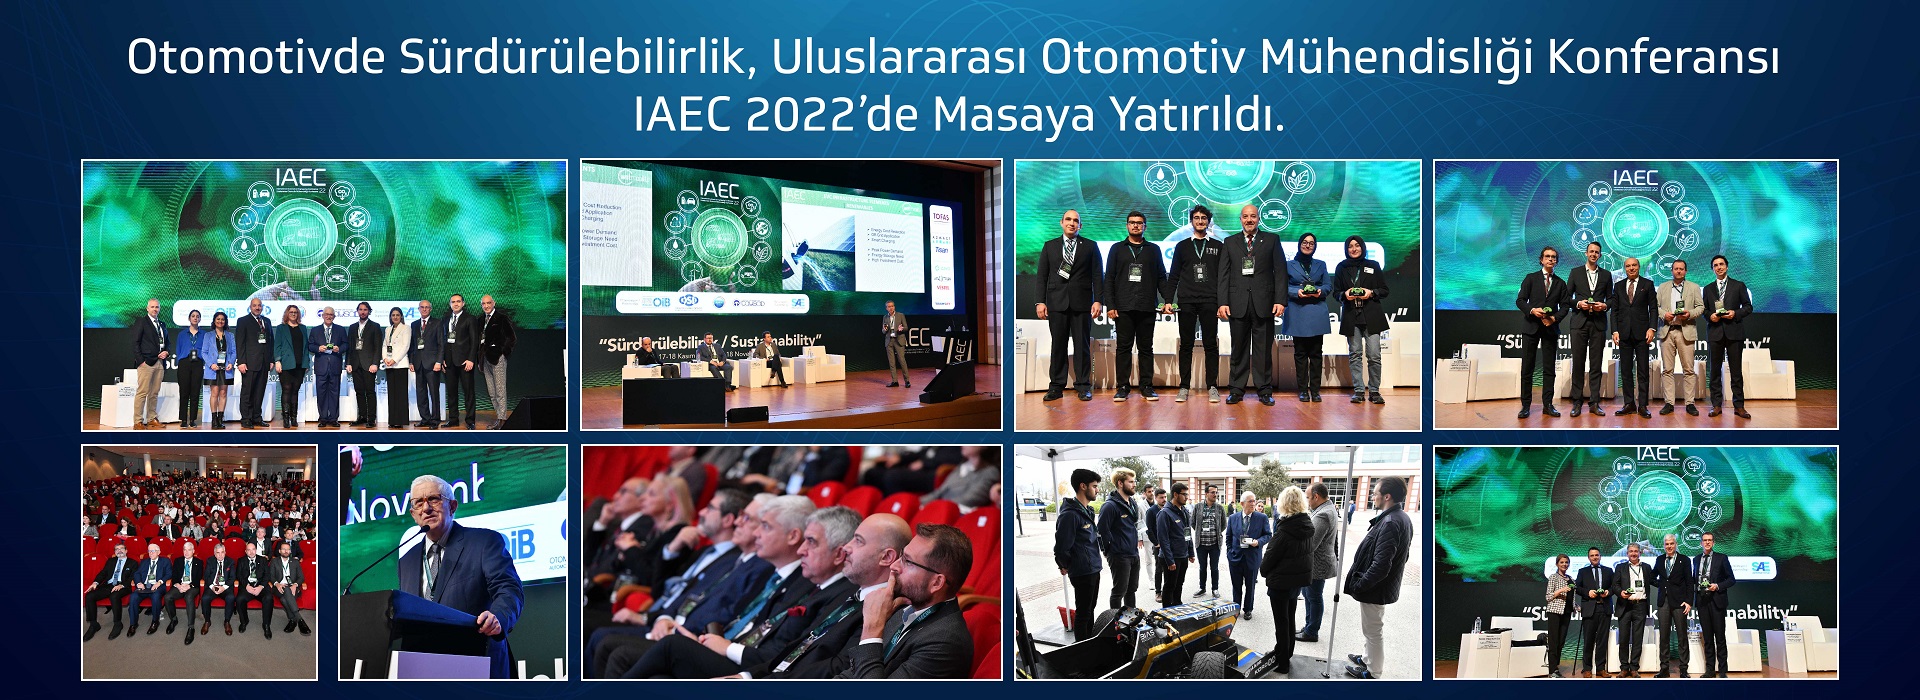 IAEC 2022 - Uluslararası Otomotiv Mühendisliği Konferansı